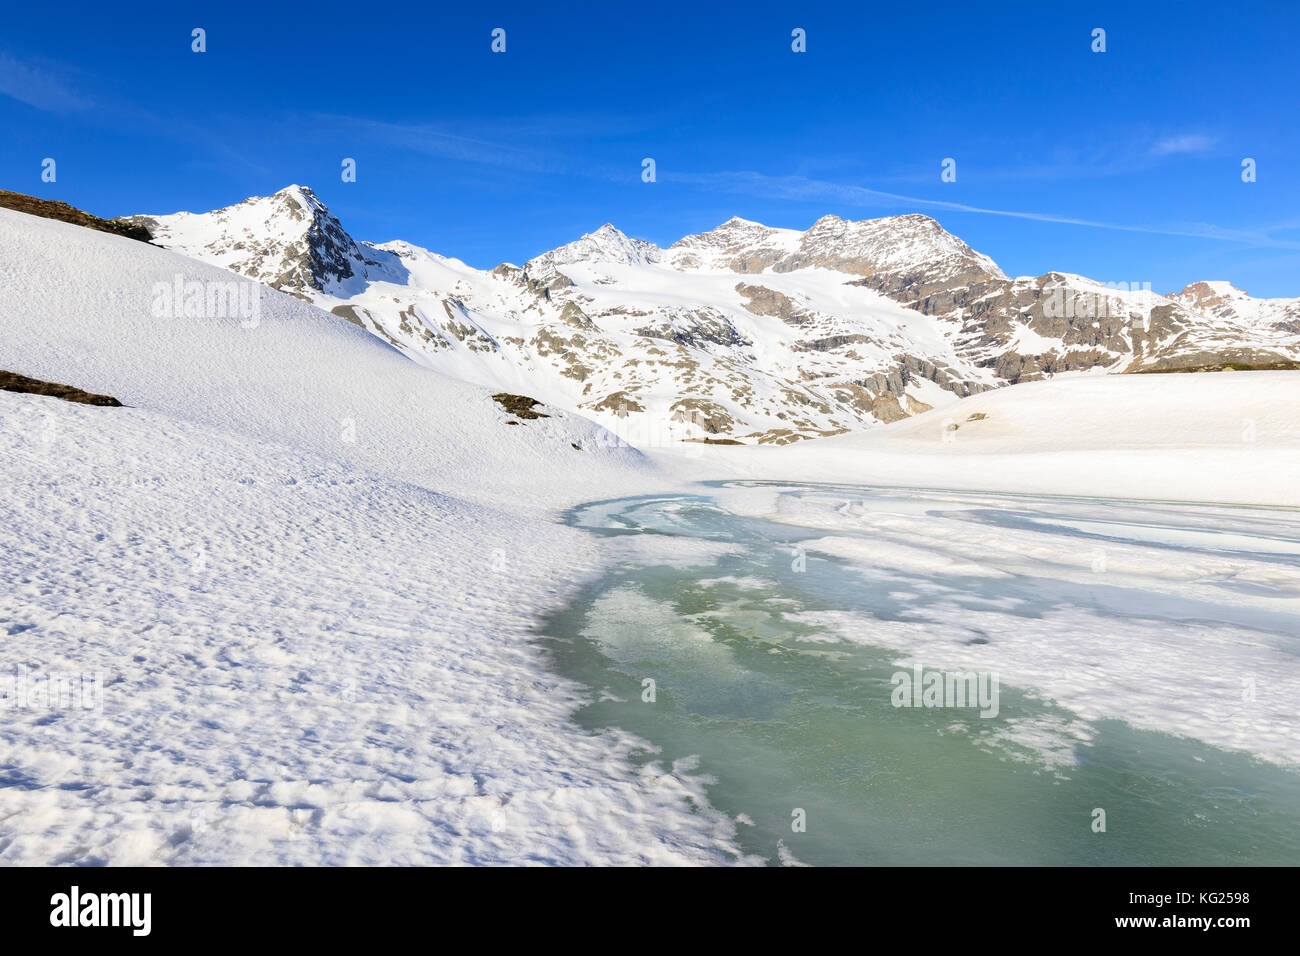 La molla del disgelo al Passo Bernina, st moritz, alta Engadina nel cantone dei Grigioni, Svizzera, Europa Foto Stock